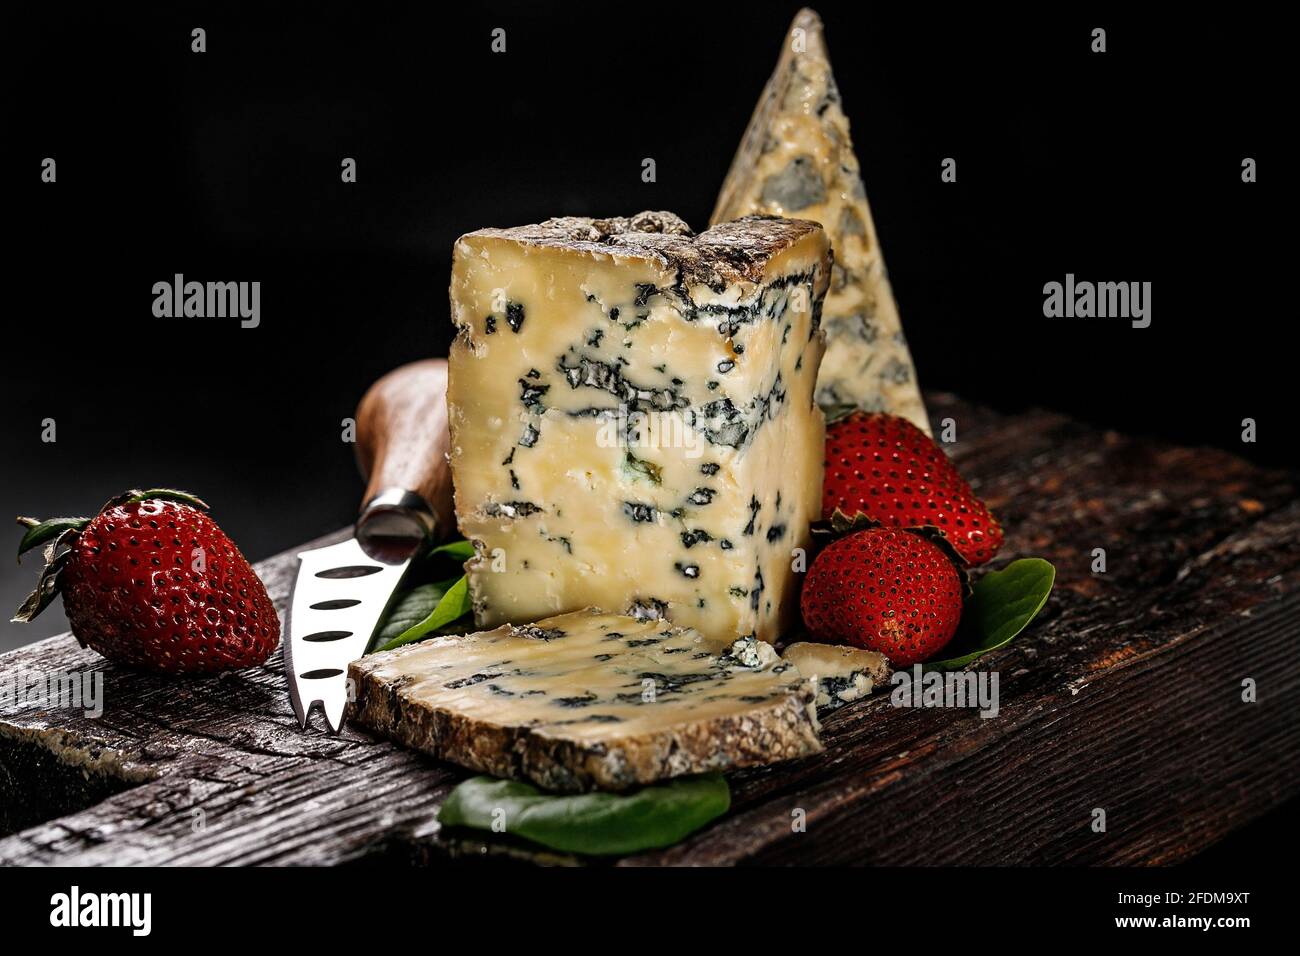 Queso semisólido con molde hecho de leche de vaca. El rey de los quesos azules es Stilton. Un pedazo de queso y fresas maduras en una tabla de madera oscura y Foto de stock